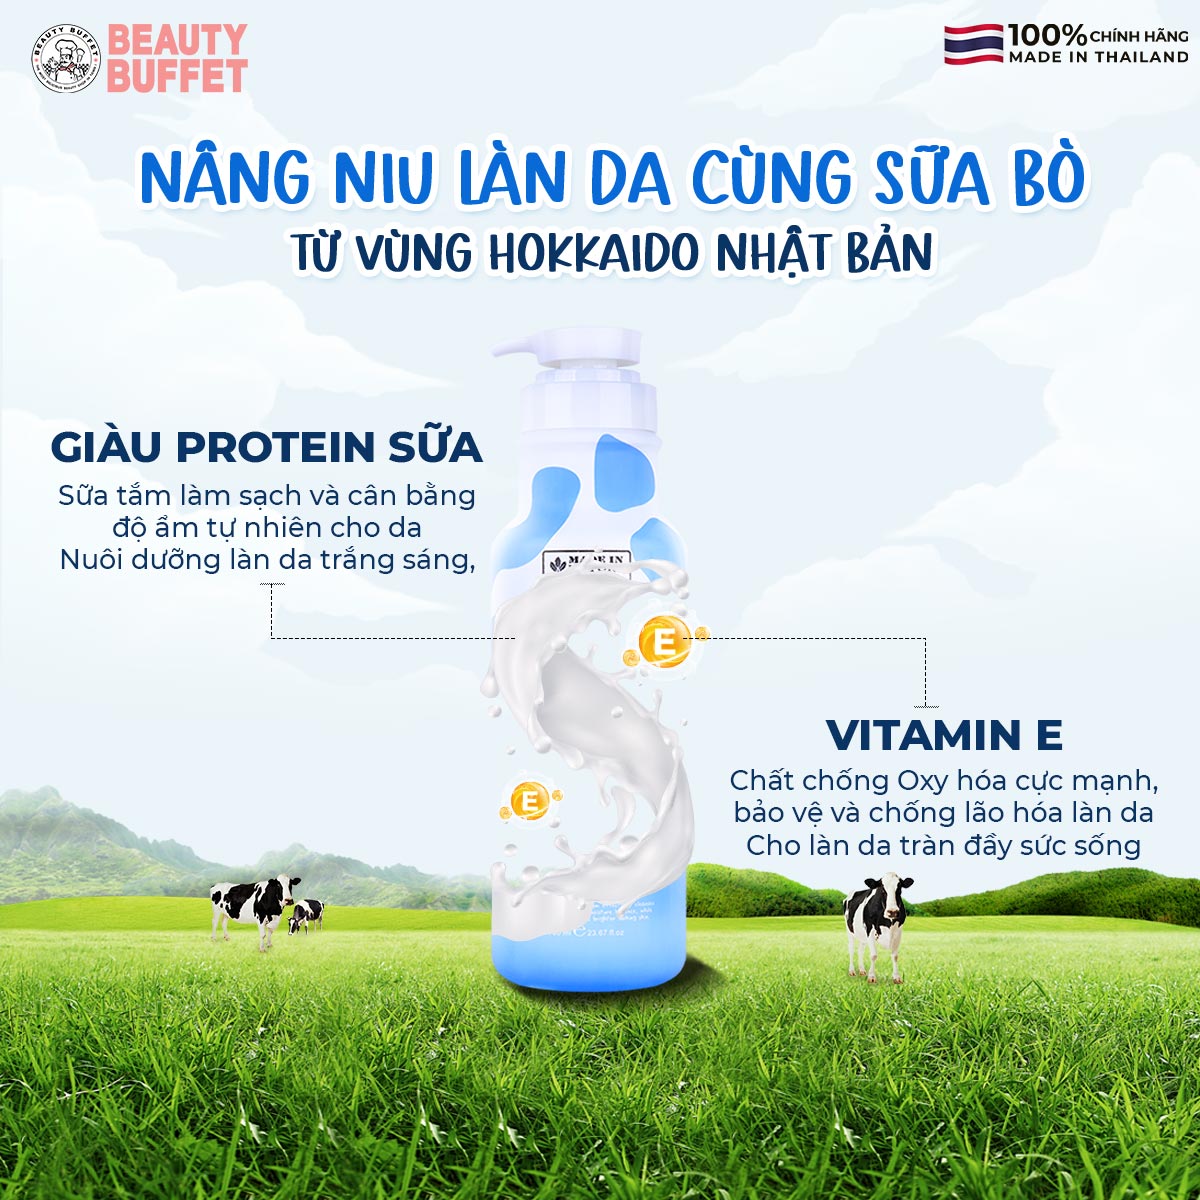 Sữa Tắm Dưỡng Ẩm Và Làm Sáng Mịn Da Từ Hokkaido Made In Nature 700ml